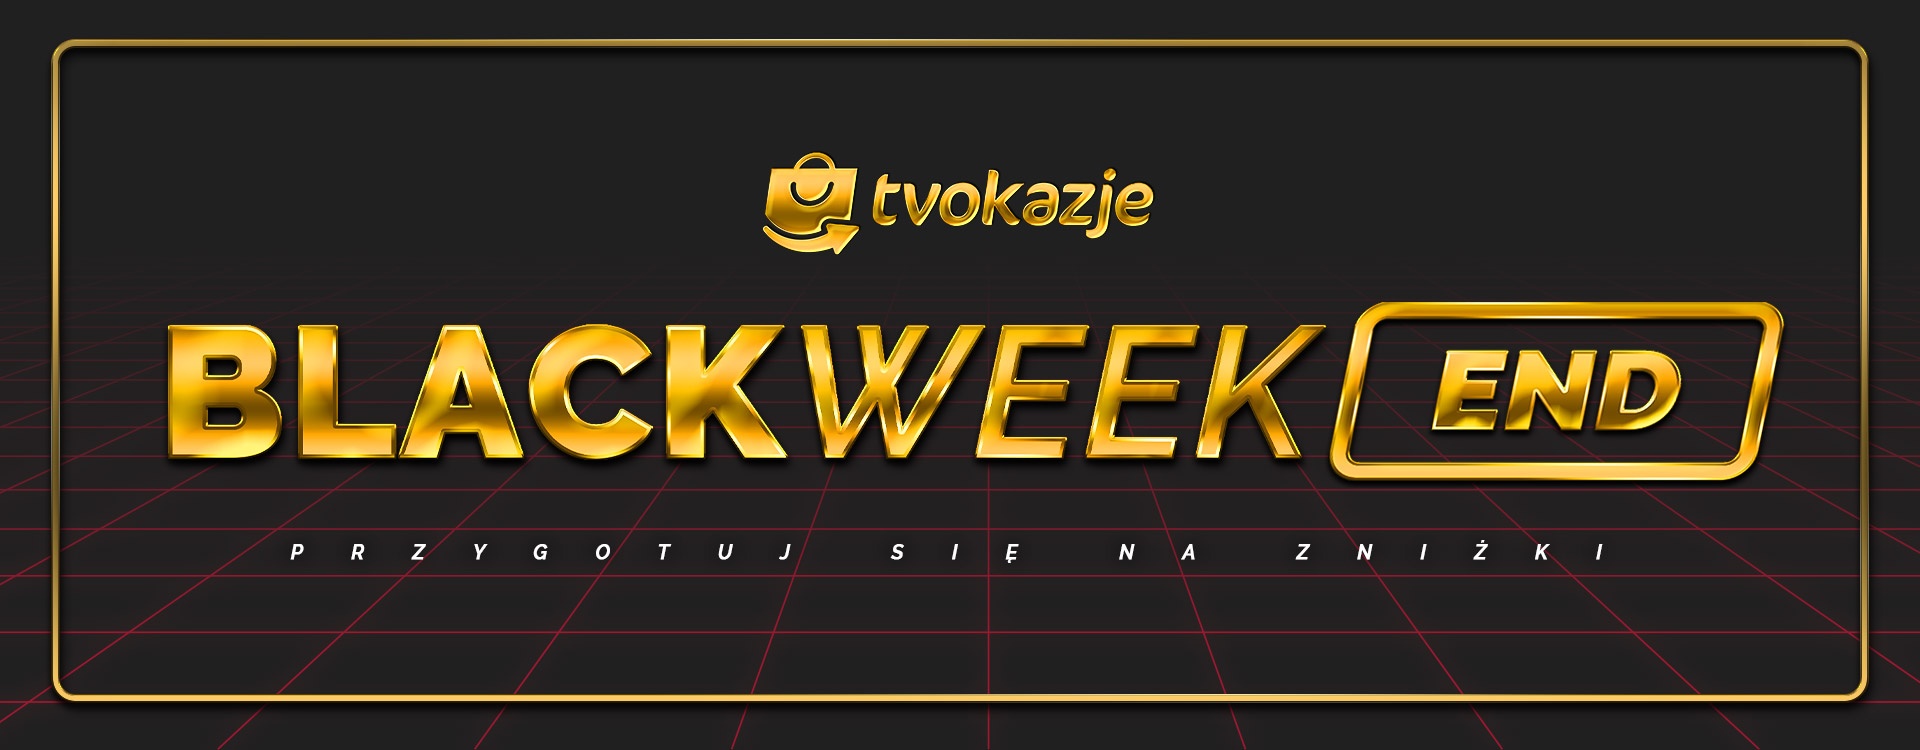 Black WeekEnd w TV Okazje – przygotuj się na 3 dni najlepszych zniżek